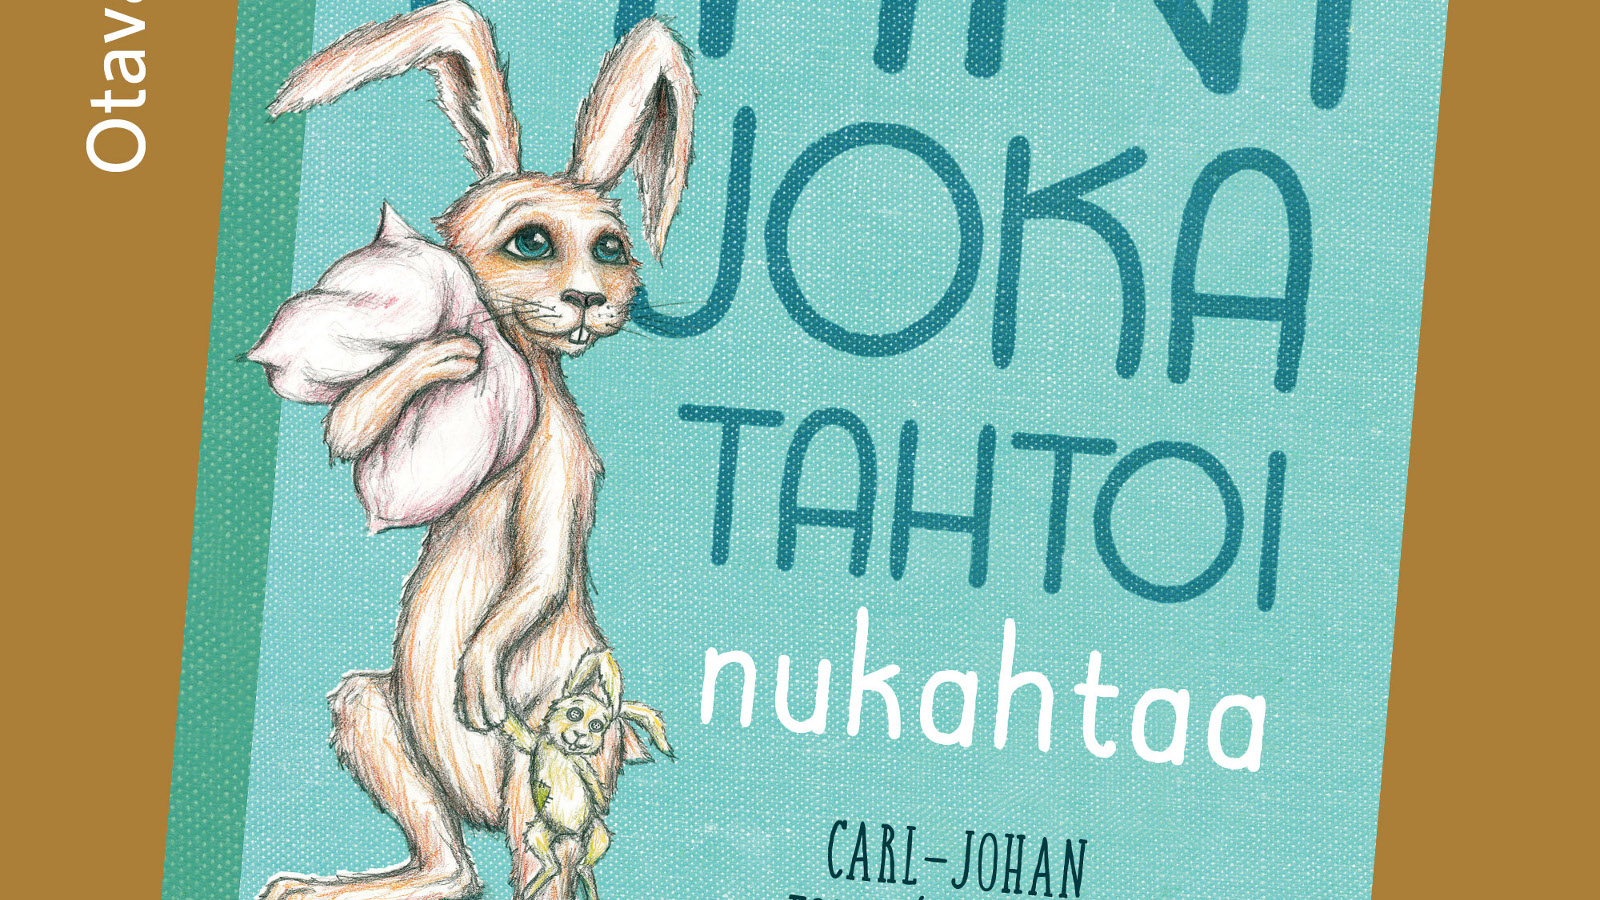 Kuvassa on osa kirjan kannesta ja siinä on vasemmalla piirroskuva kanista.  Kirjan nimestä näkyy osa. Kannessa on vaalean sinistä ja taustalla on vaalean ruskeaa.